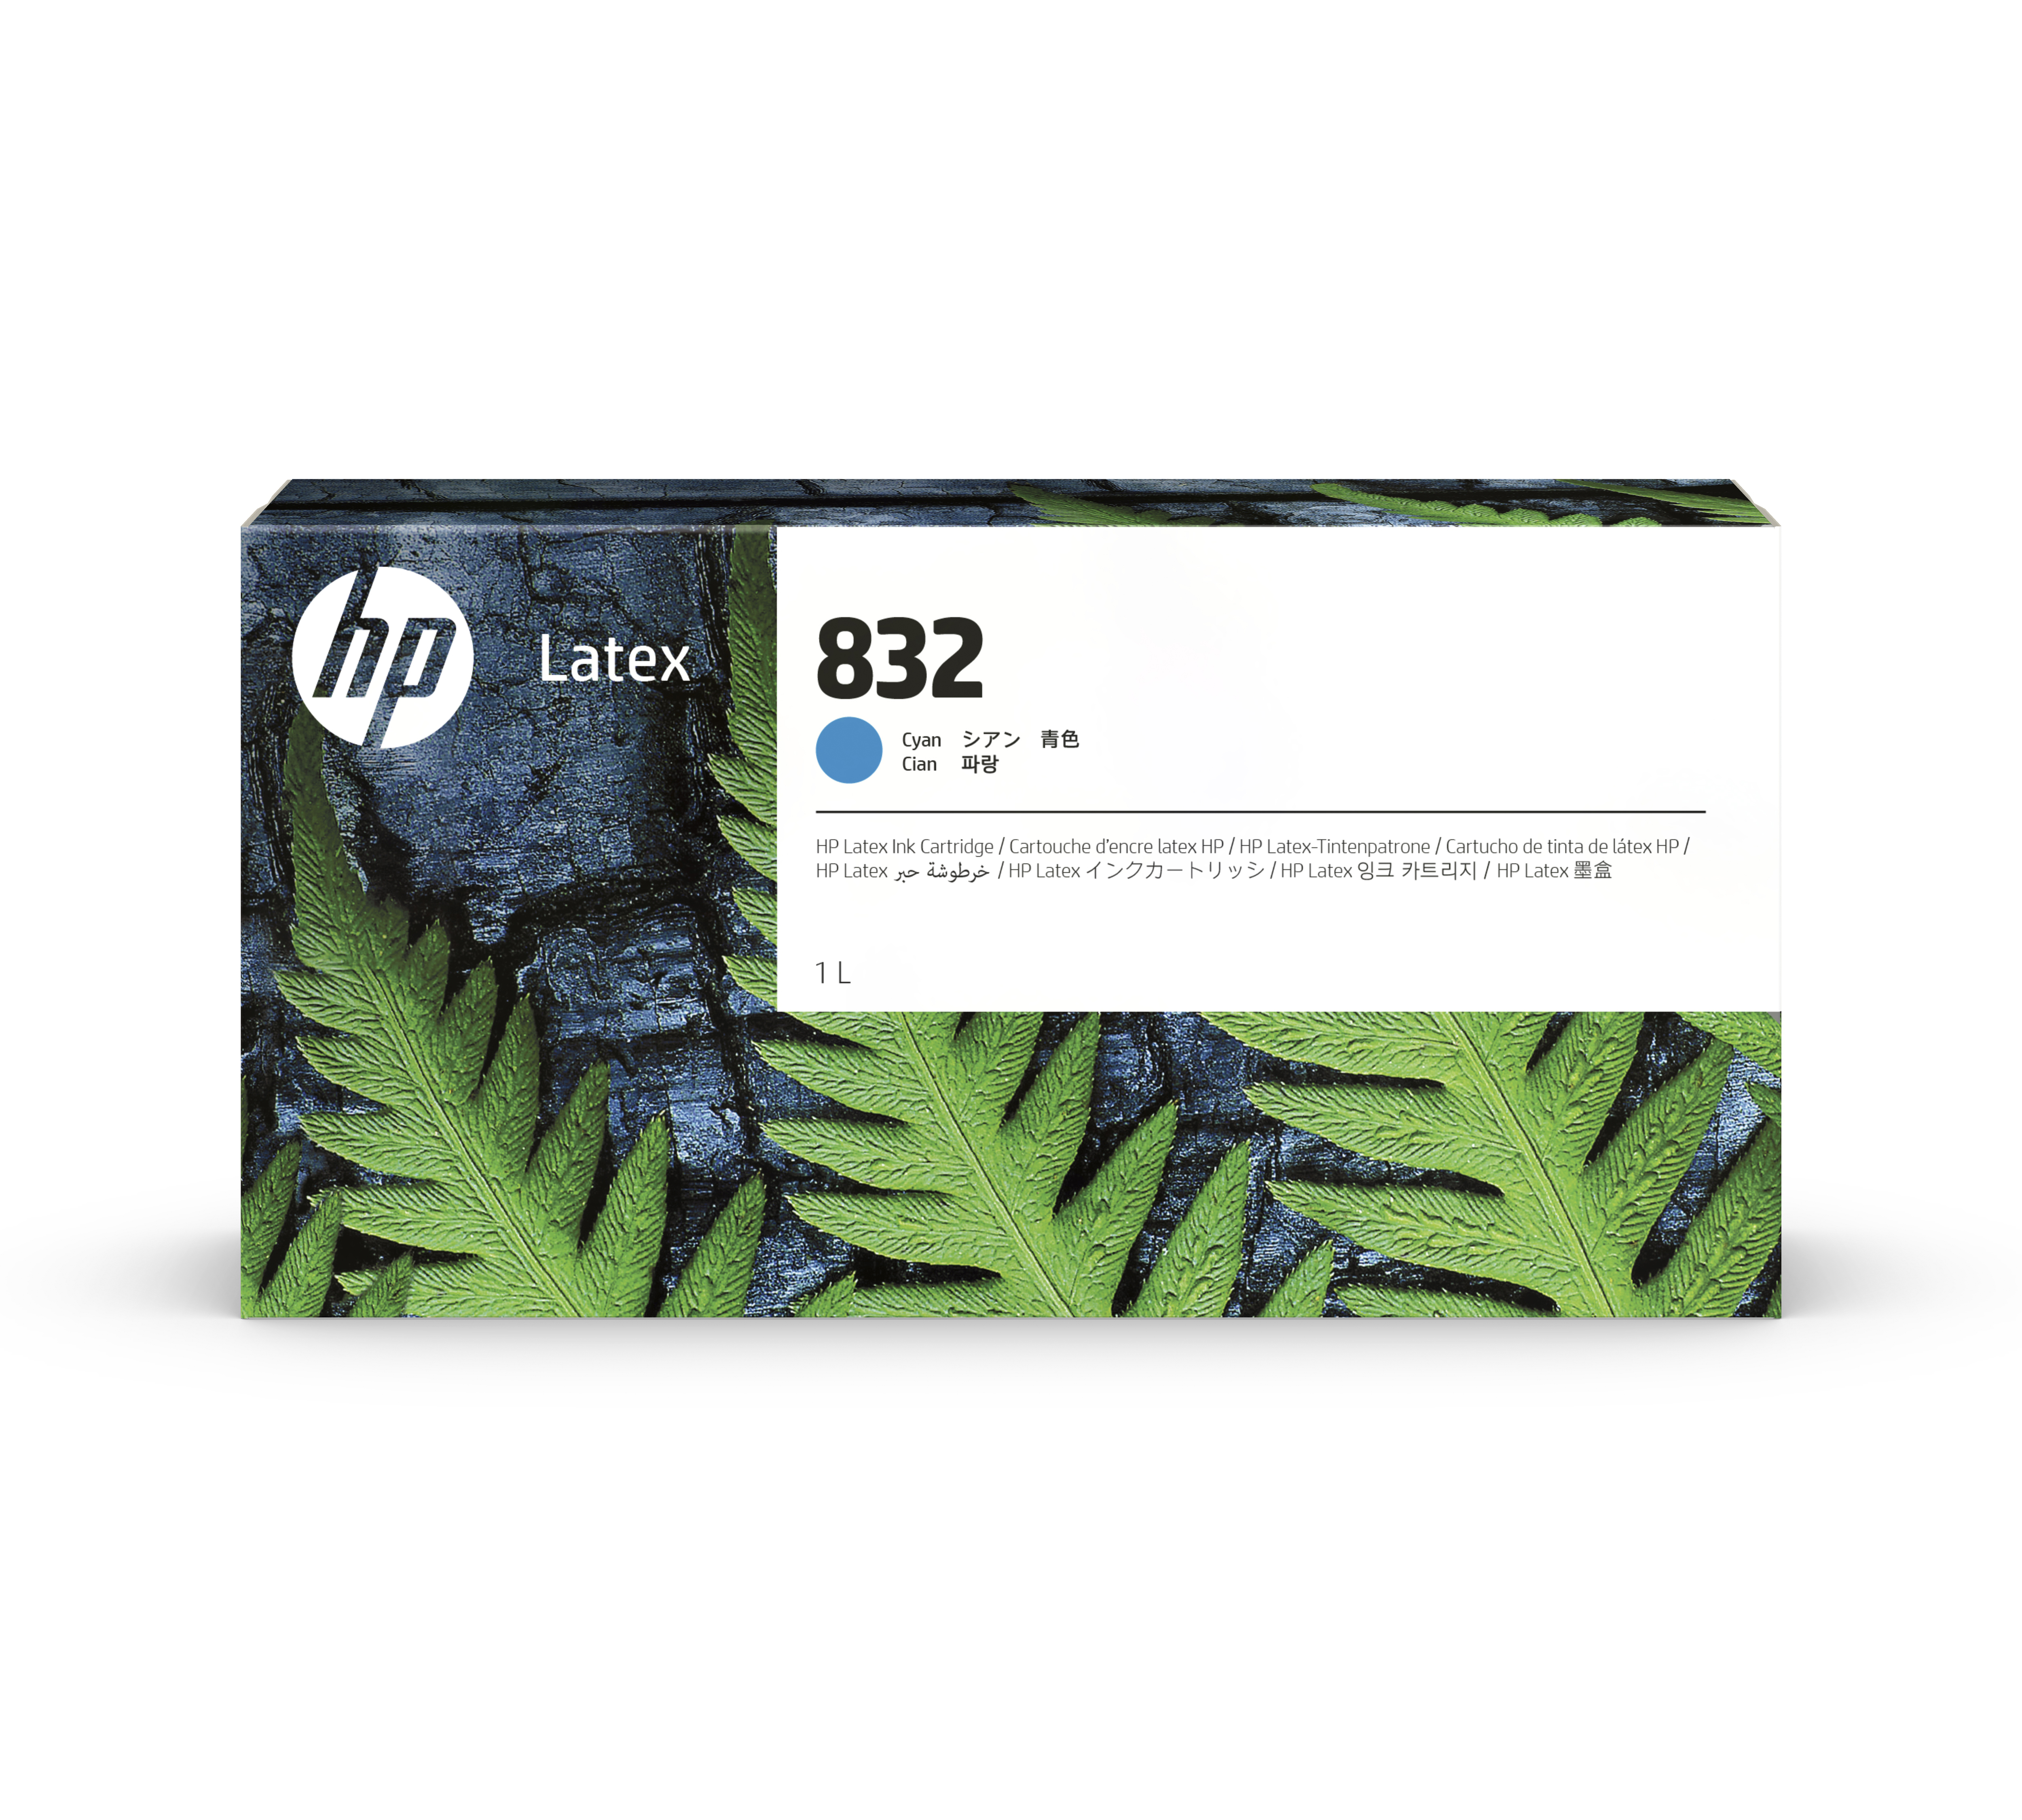 HP 832 Latex Tinte cyan - 1 Liter